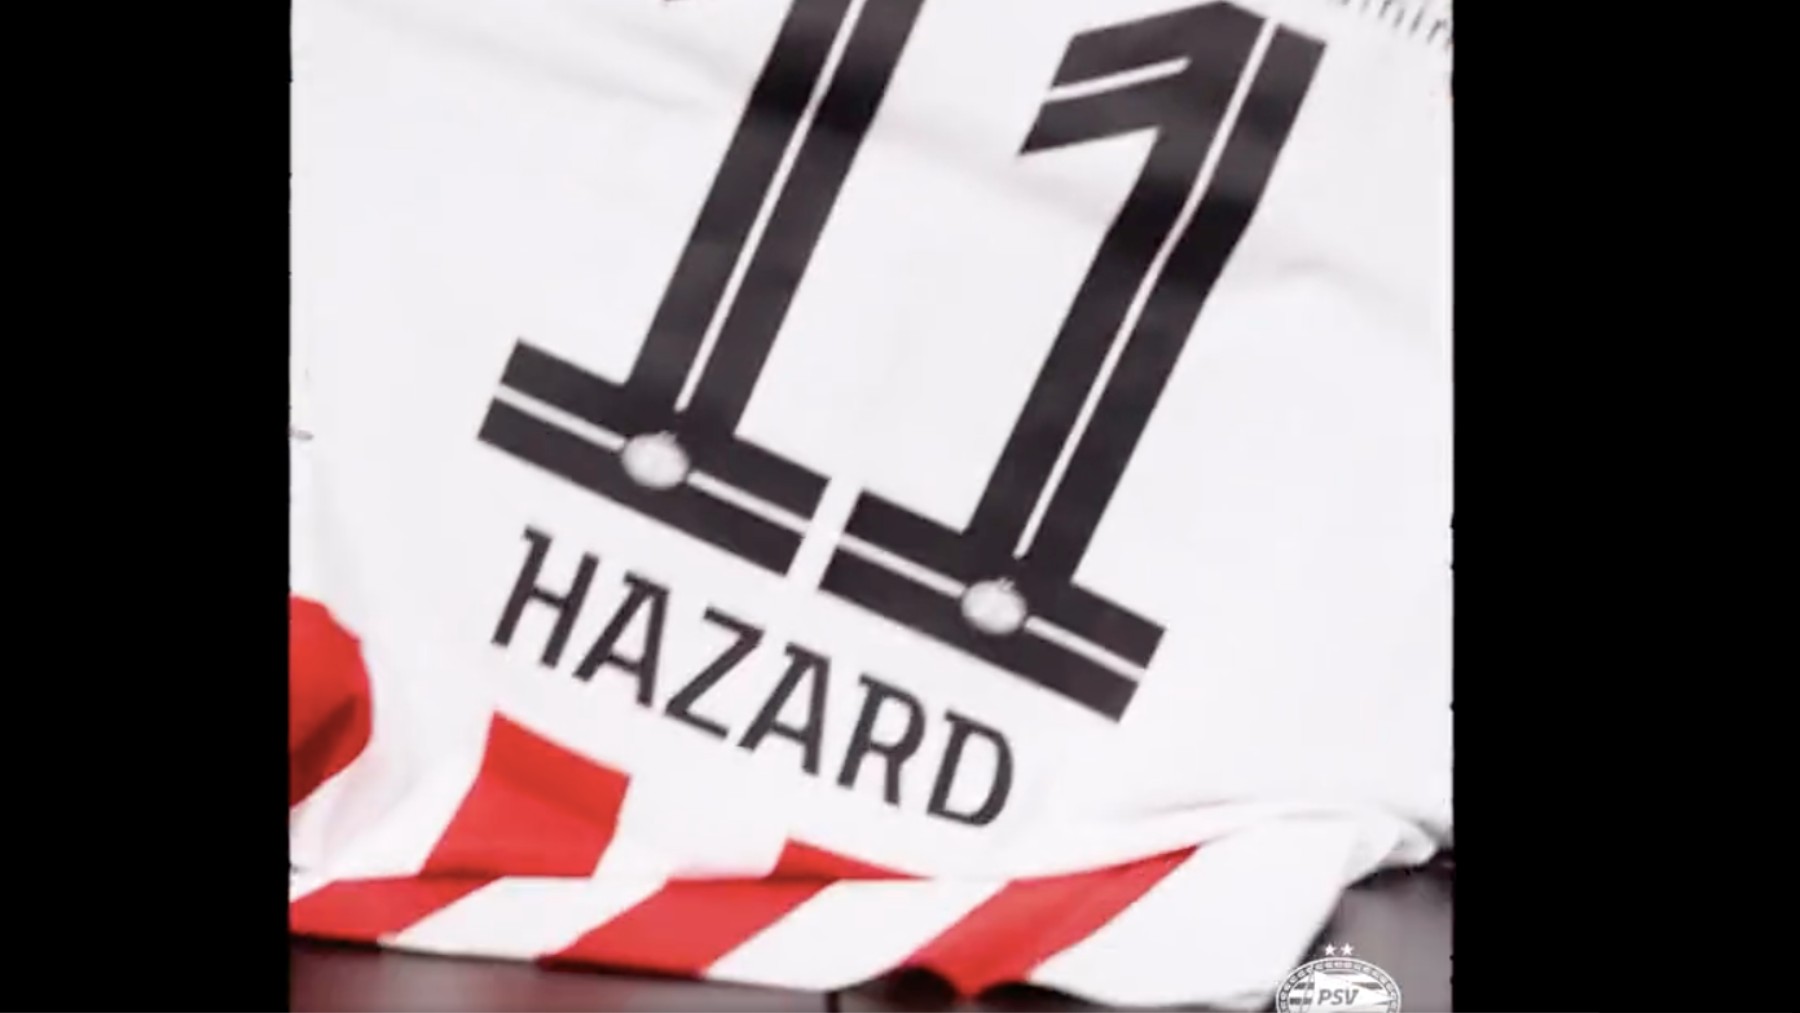 La camiseta de Hazard en el PSV